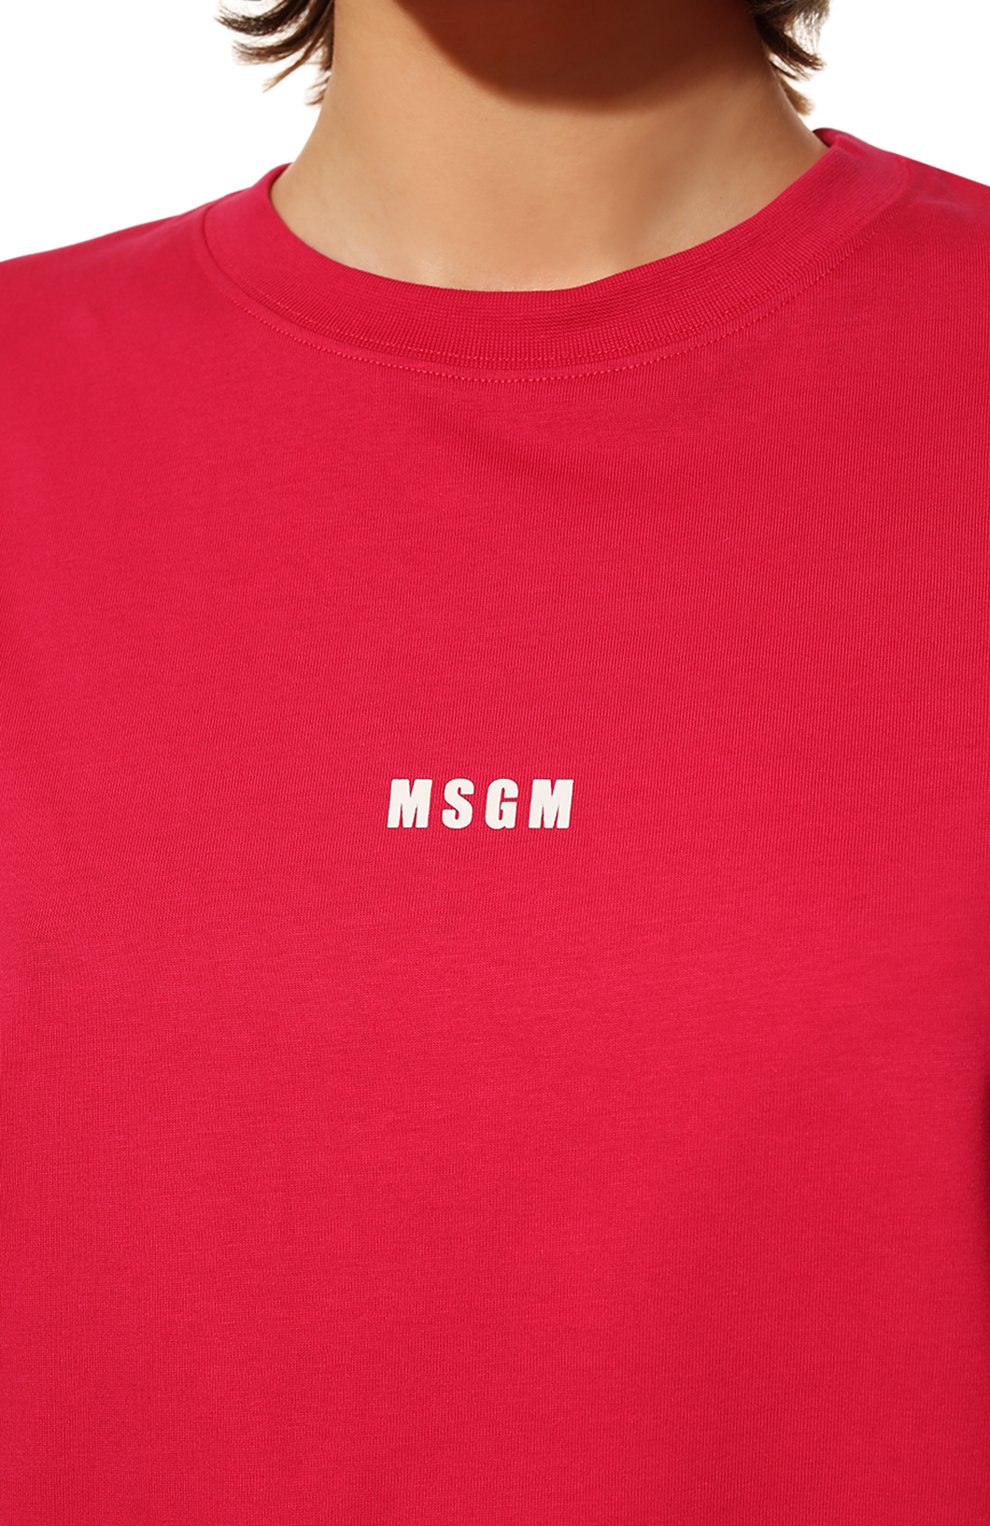 Женская хлопковая футболка MSGM фуксия цвета, арт. 3341MDM500 227798 | Фото 5 (Женское Кросс-КТ: Футболка-спорт, Футболка-одежда; Рукава: Короткие; Длина (для топов): Стандартные; Материал внешний: Хлопок; Стили: Спорт-шик)